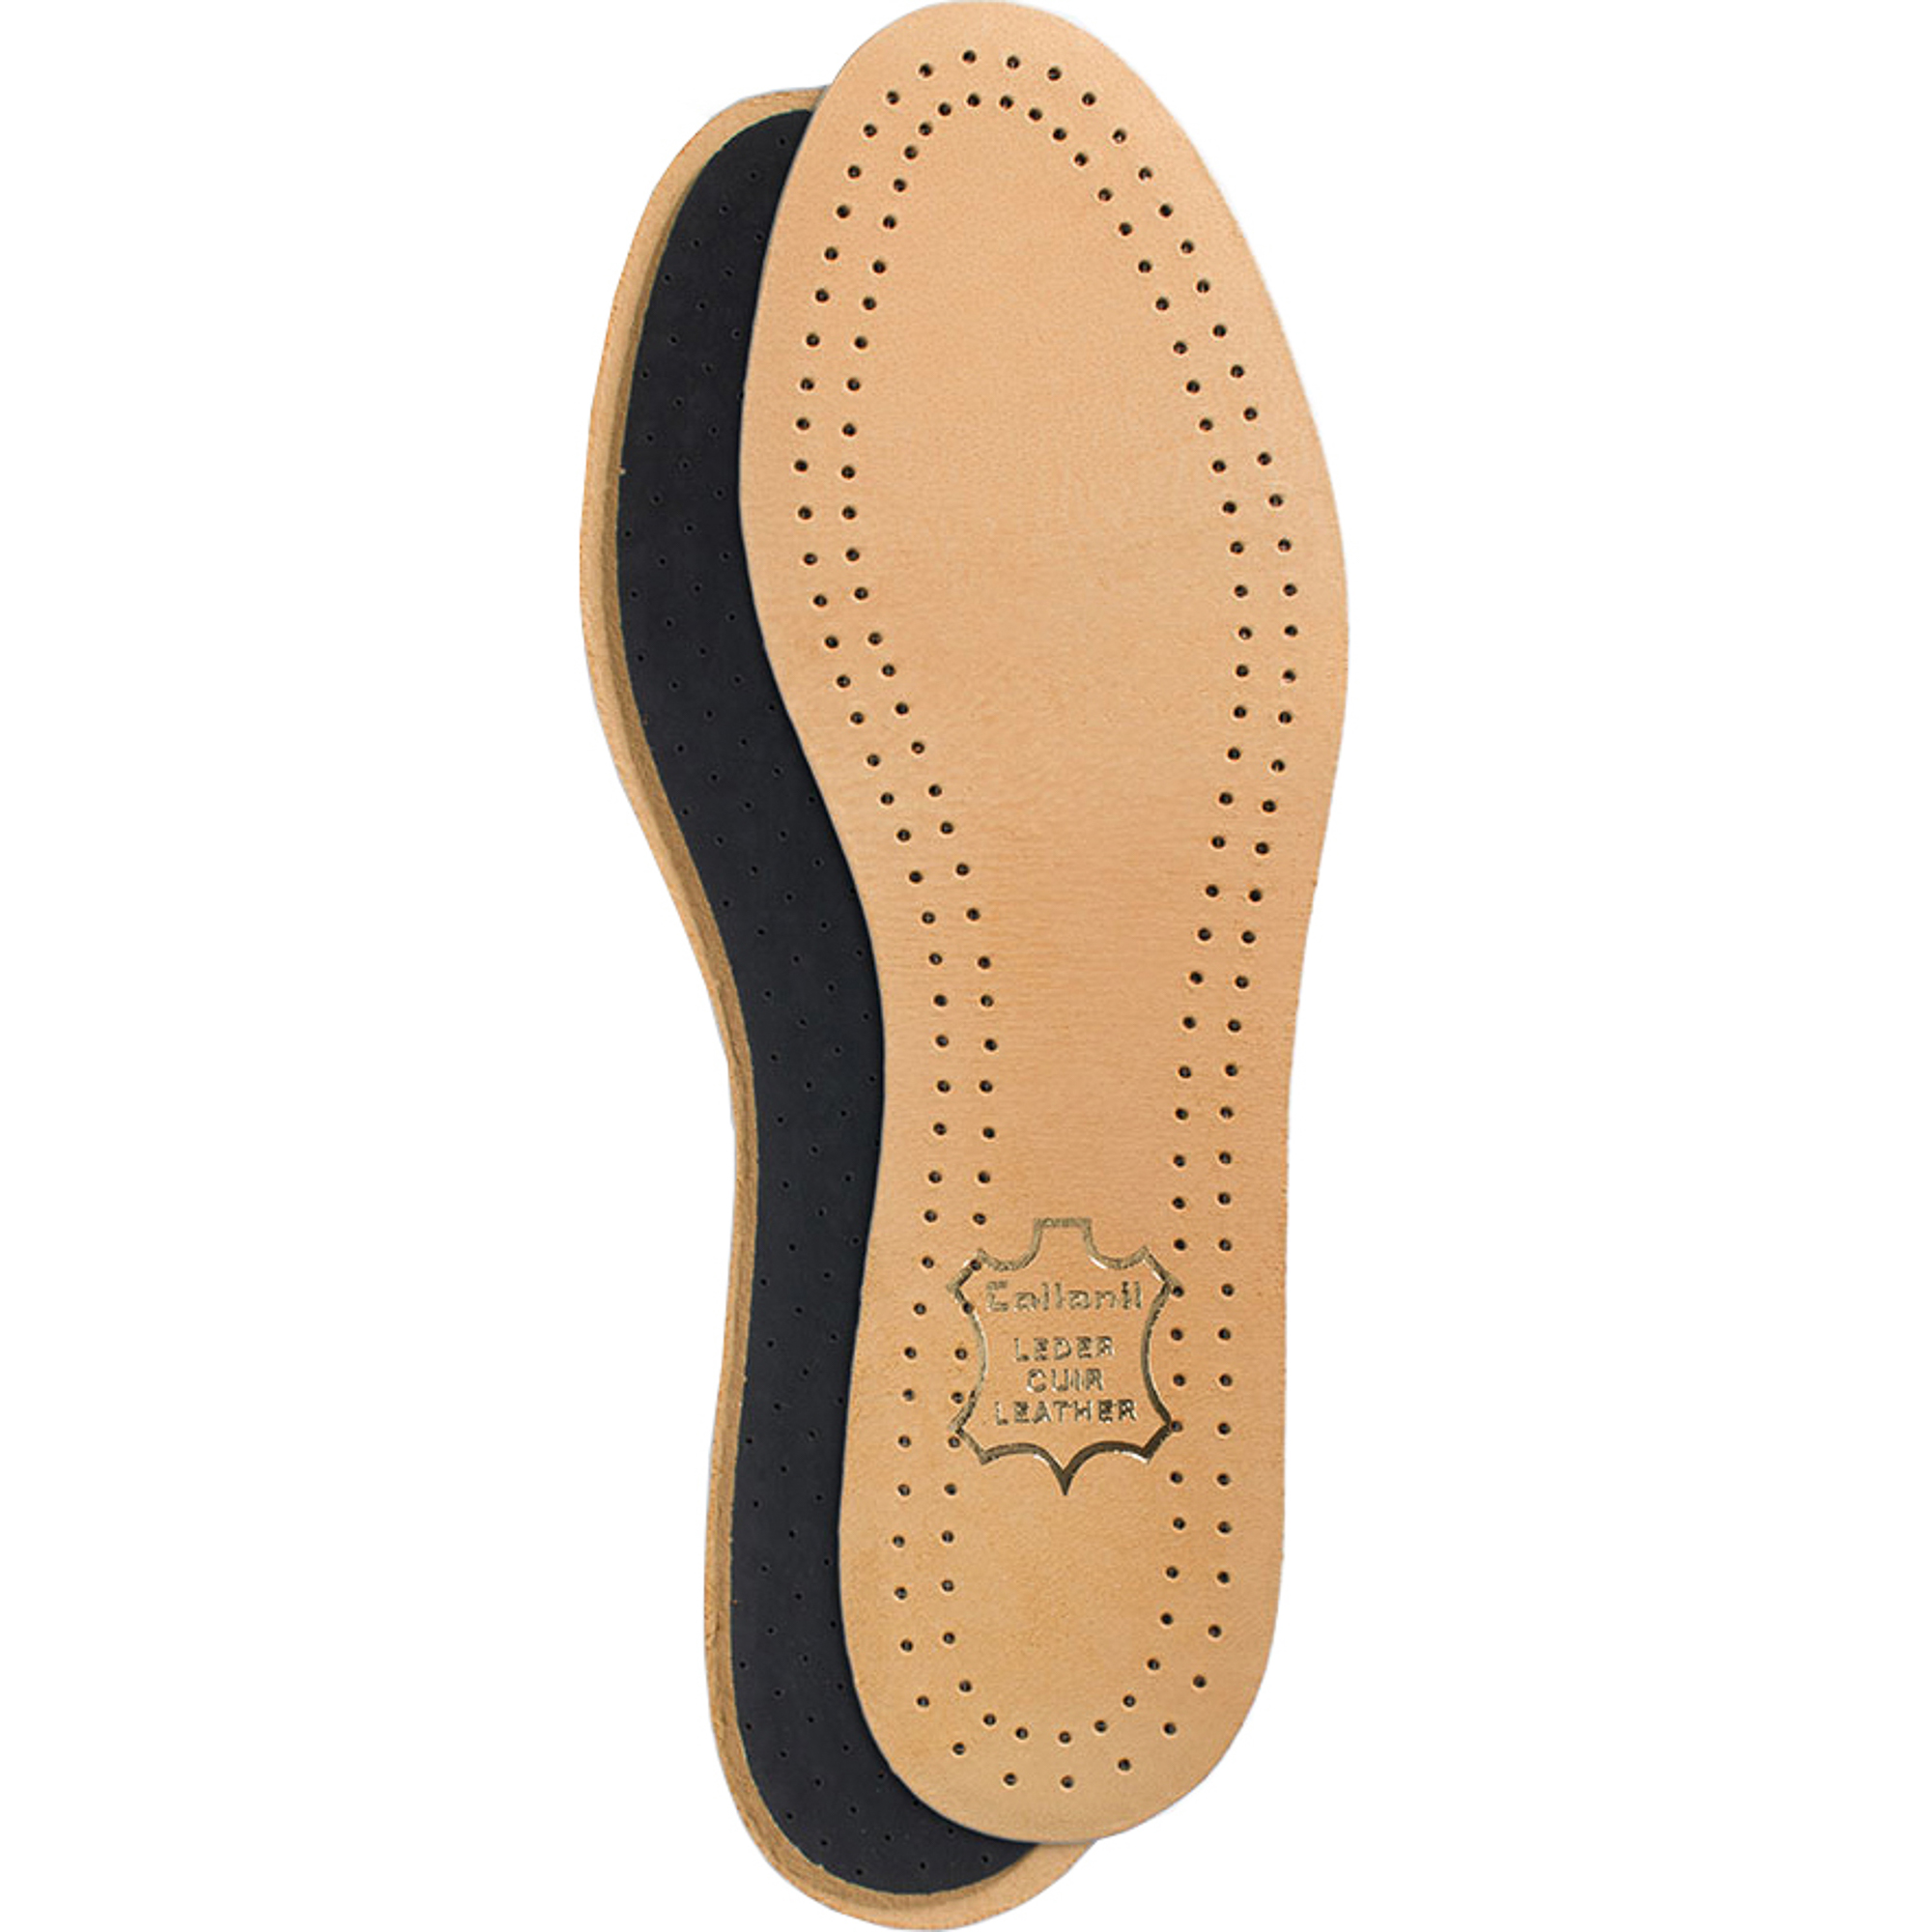 Стельки для обуви Collonil Luxor размер 39 стельки для обуви scholl gelactiv sport для женщин